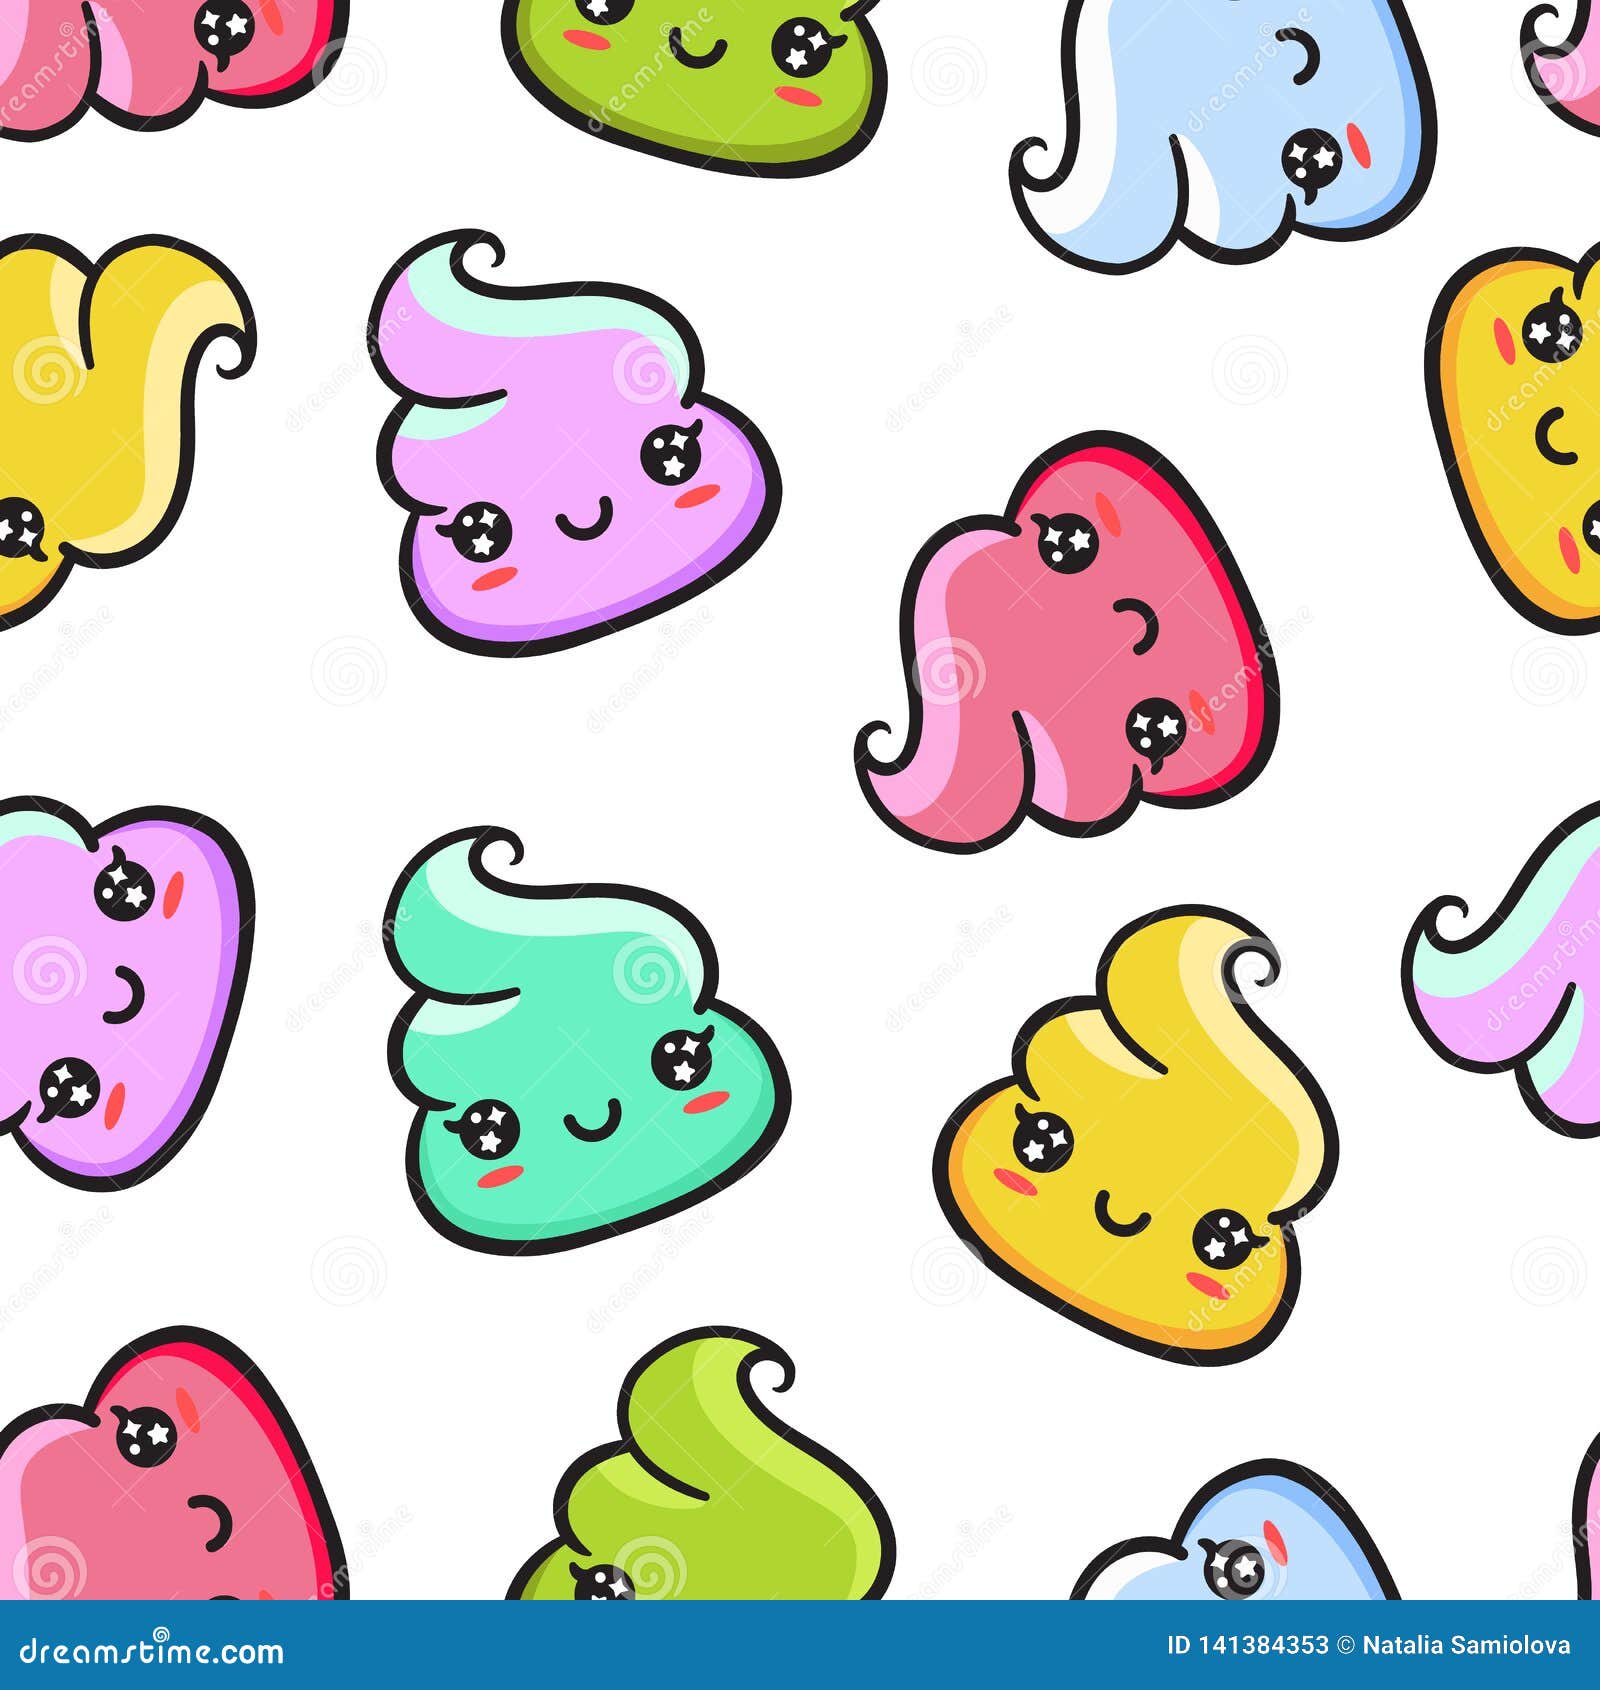 49 Emoji Poop Wallpaper  WallpaperSafari